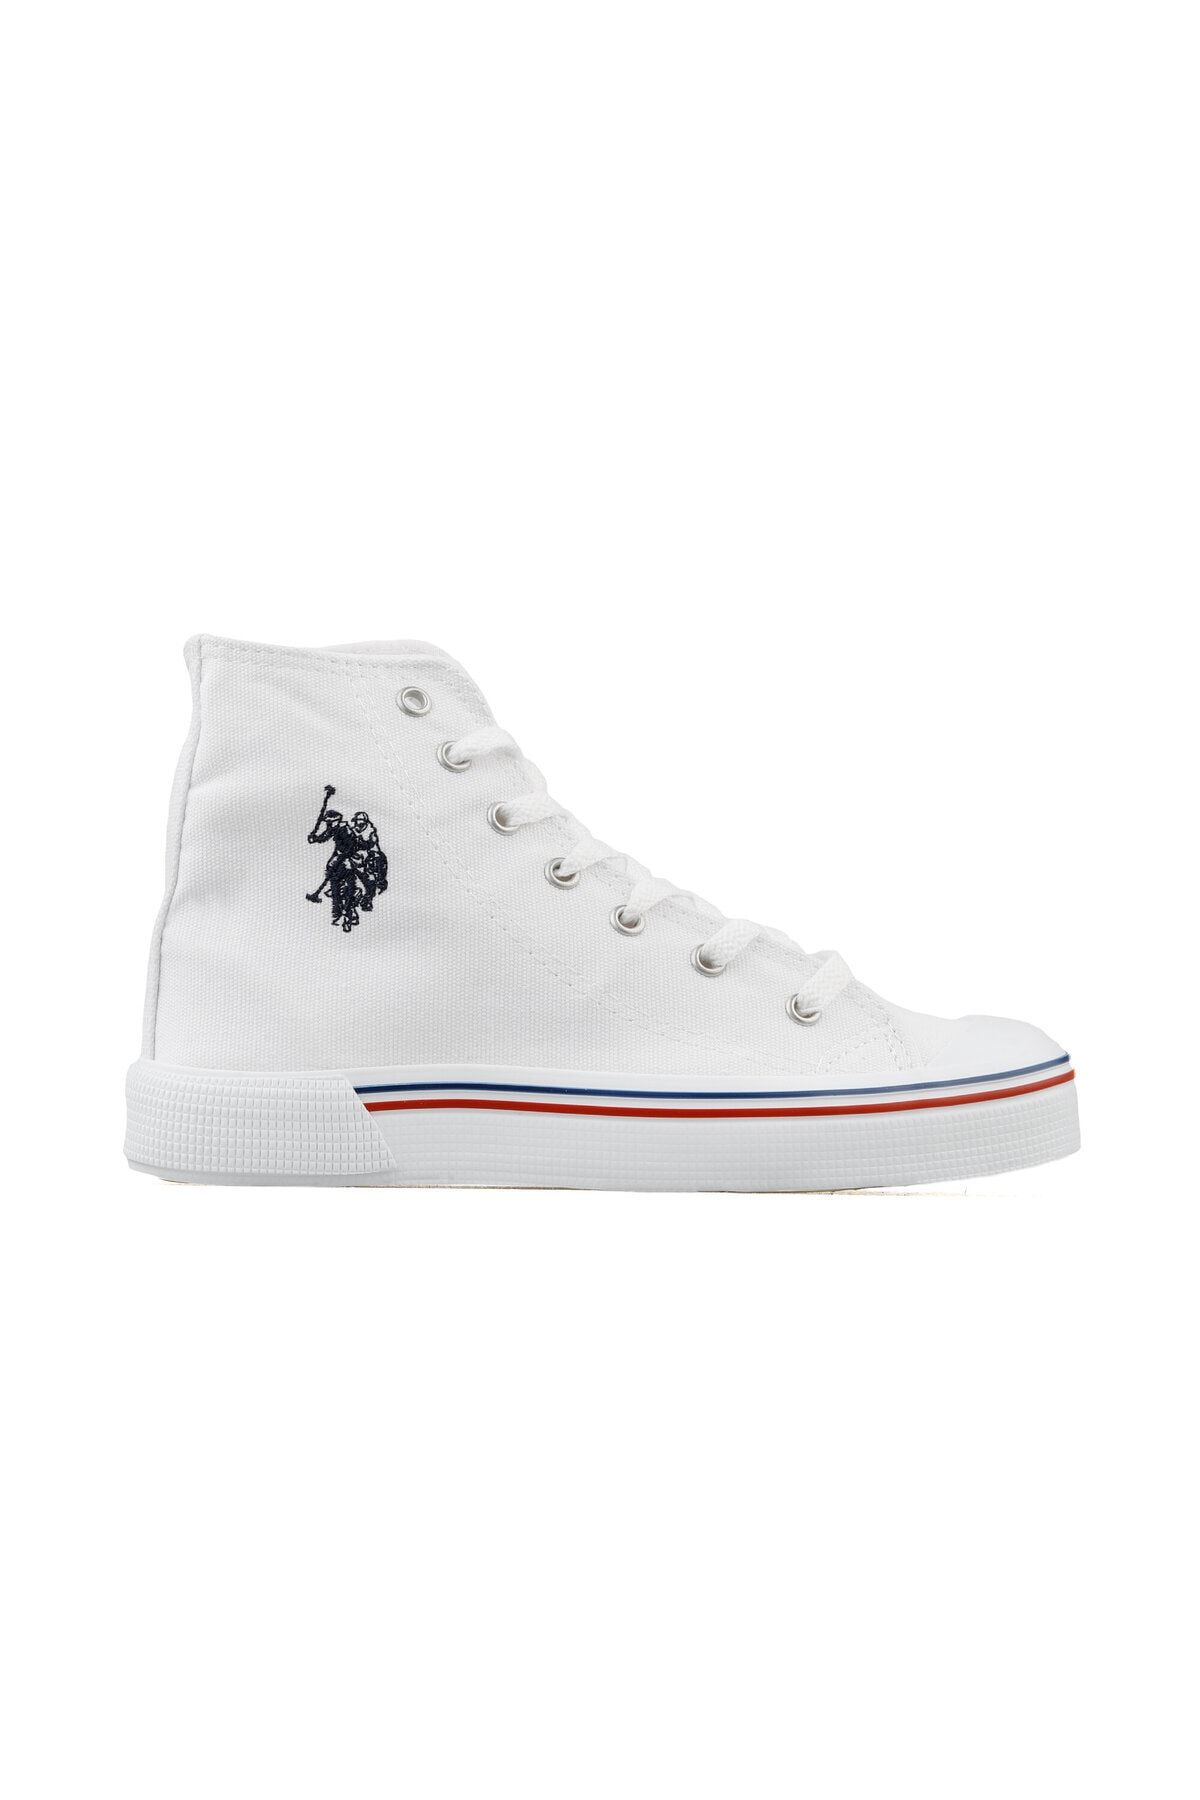 U.S.Polo Assn. White Kadın Günlük Ayakkabı 101341038 Beyaz